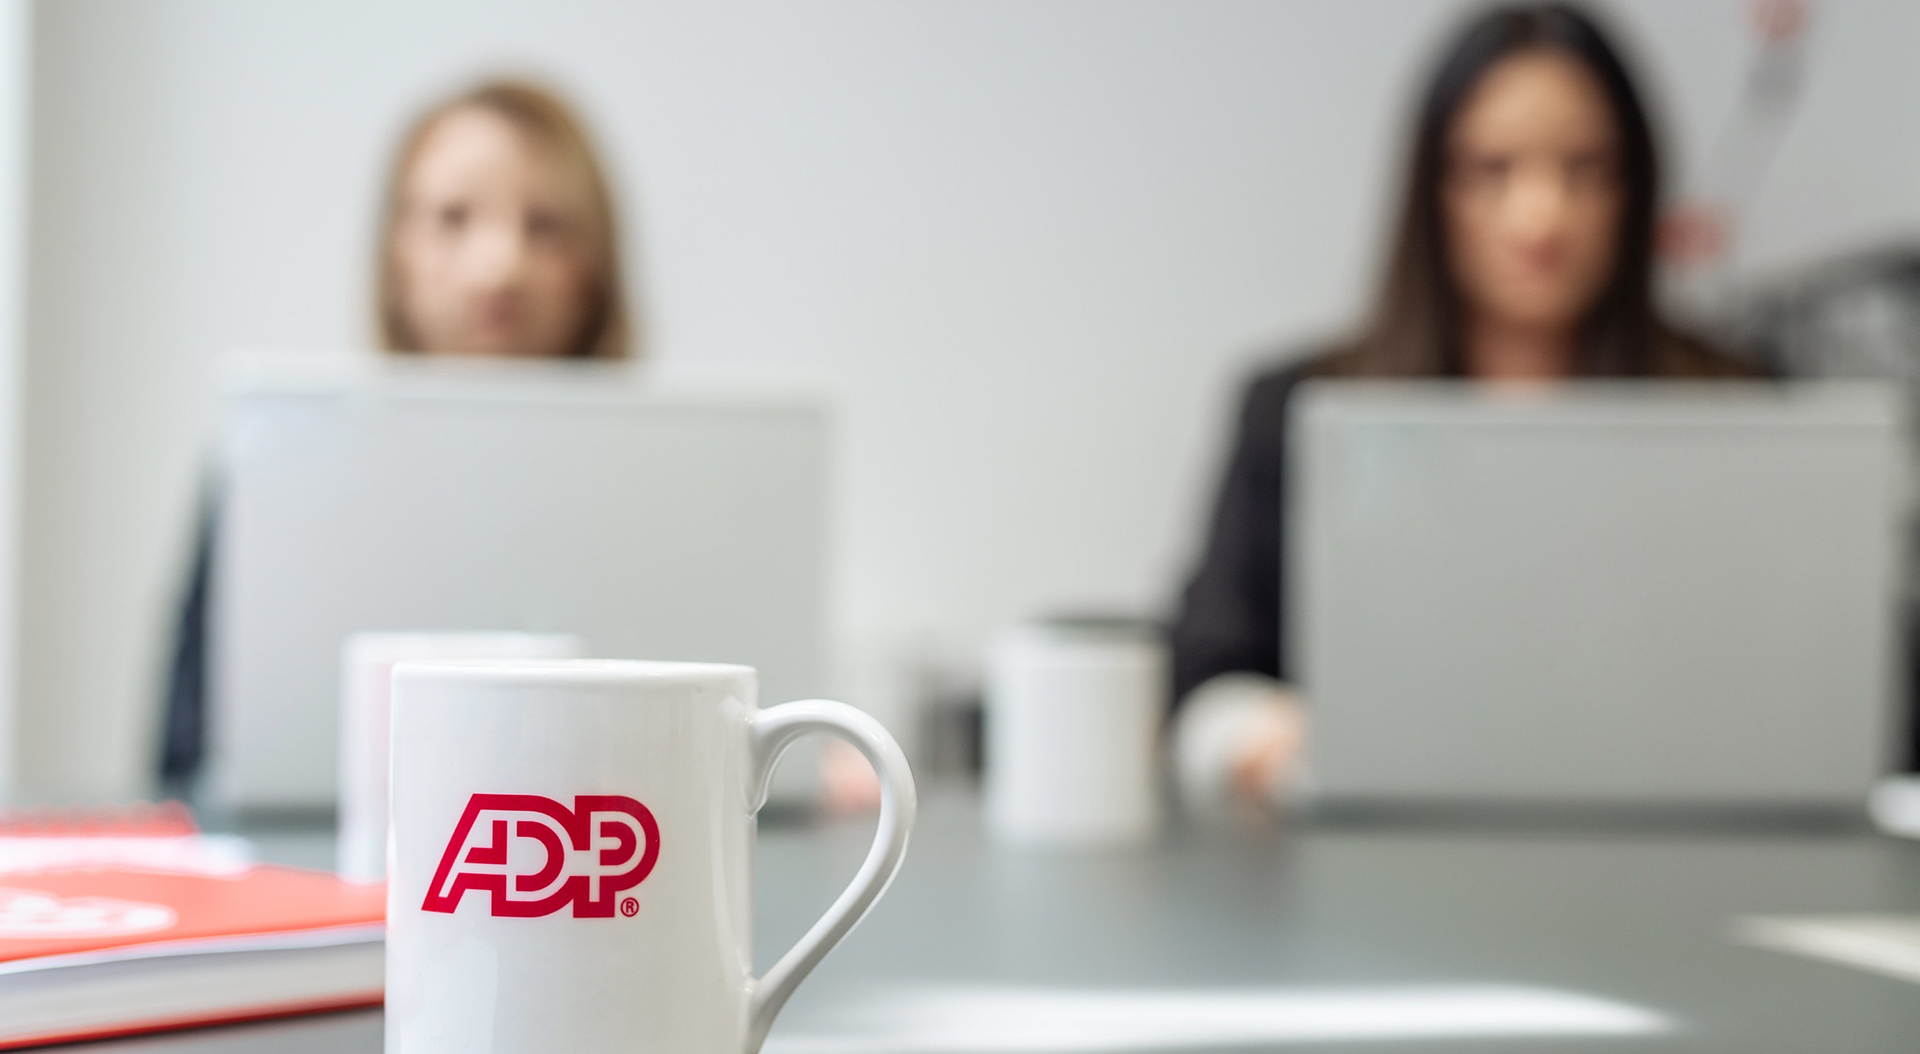 <b>ADP is hiring! </b>